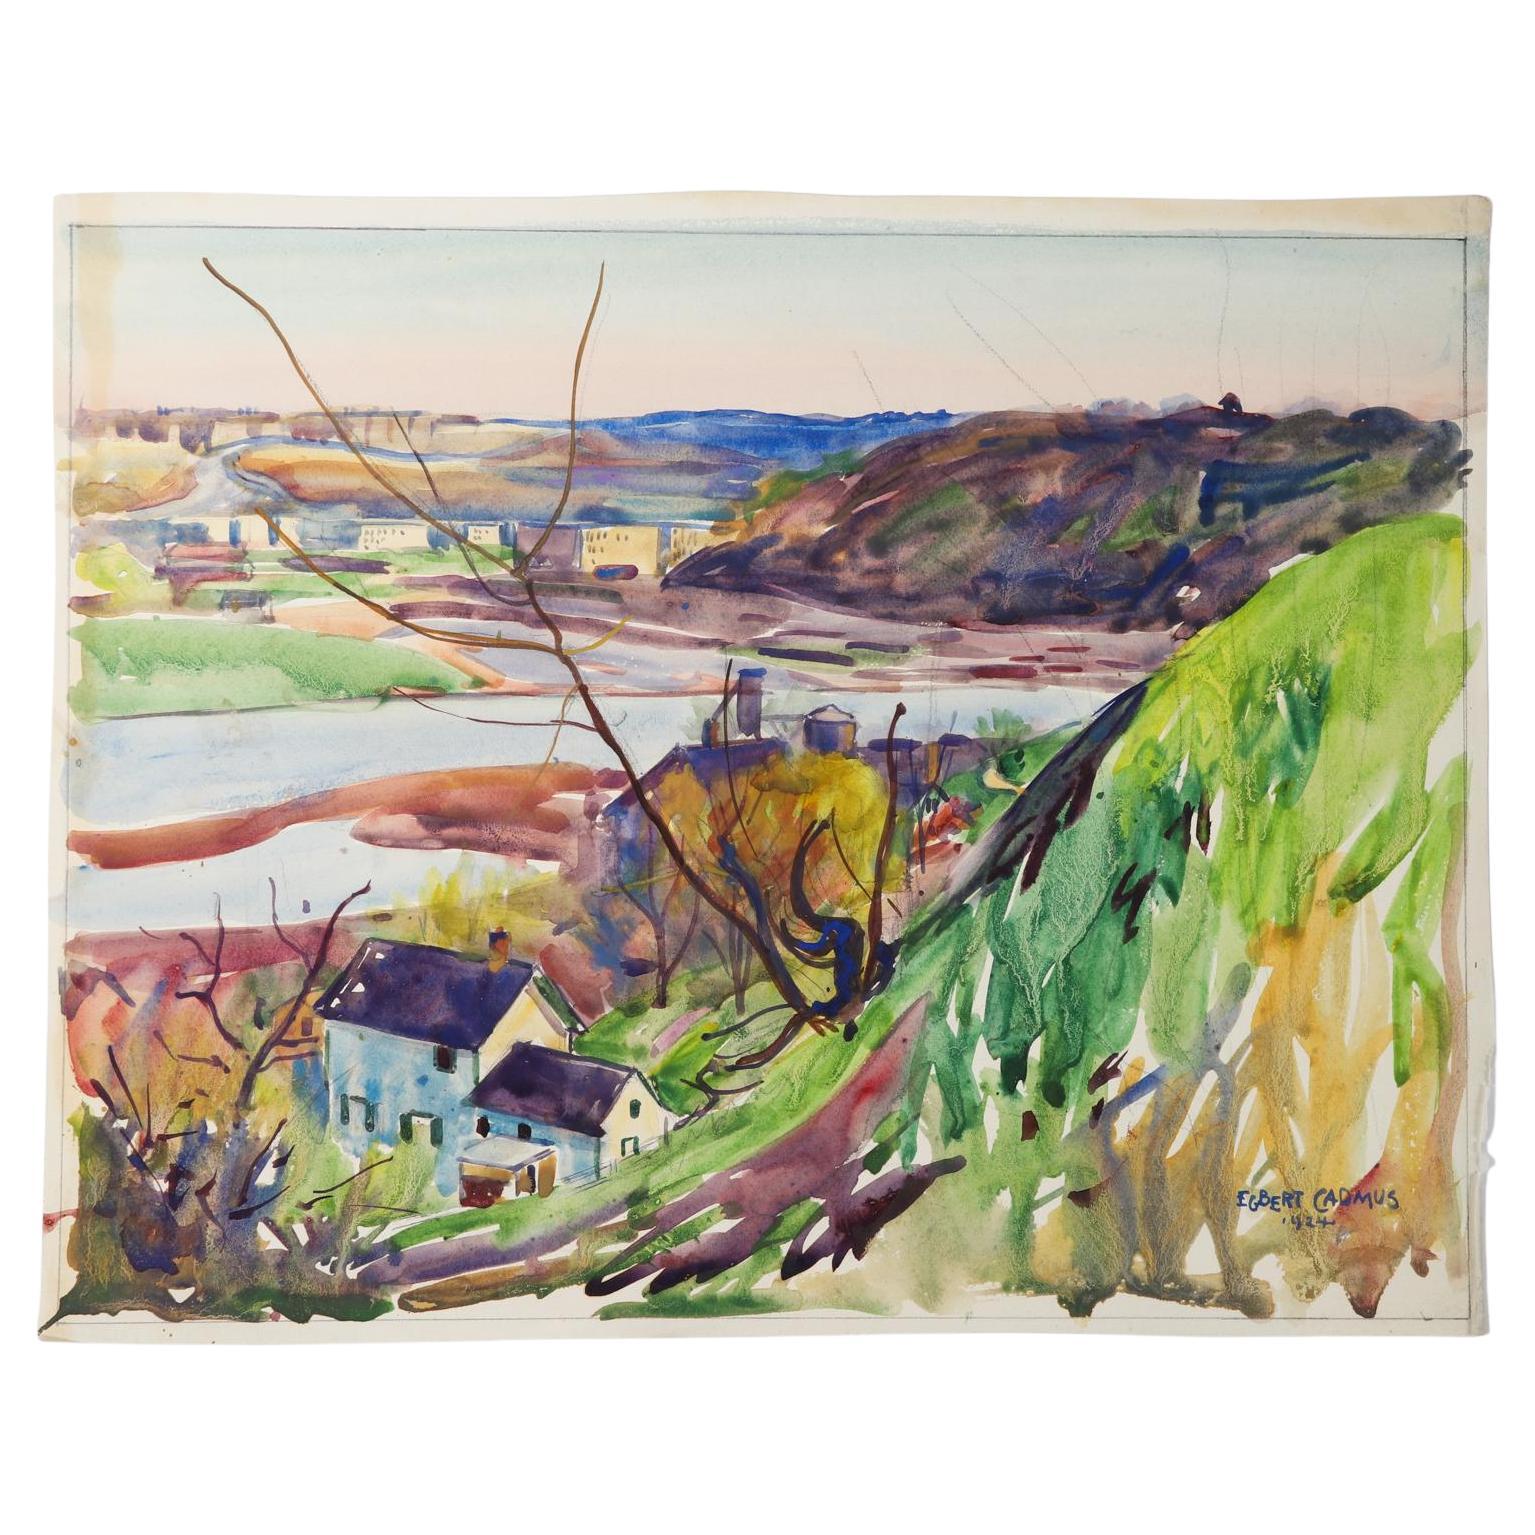 Peinture aquarelle vintage Egbert Cadmus de 1924 représentant une vue sur la rivière de la Nouvelle-Angleterre